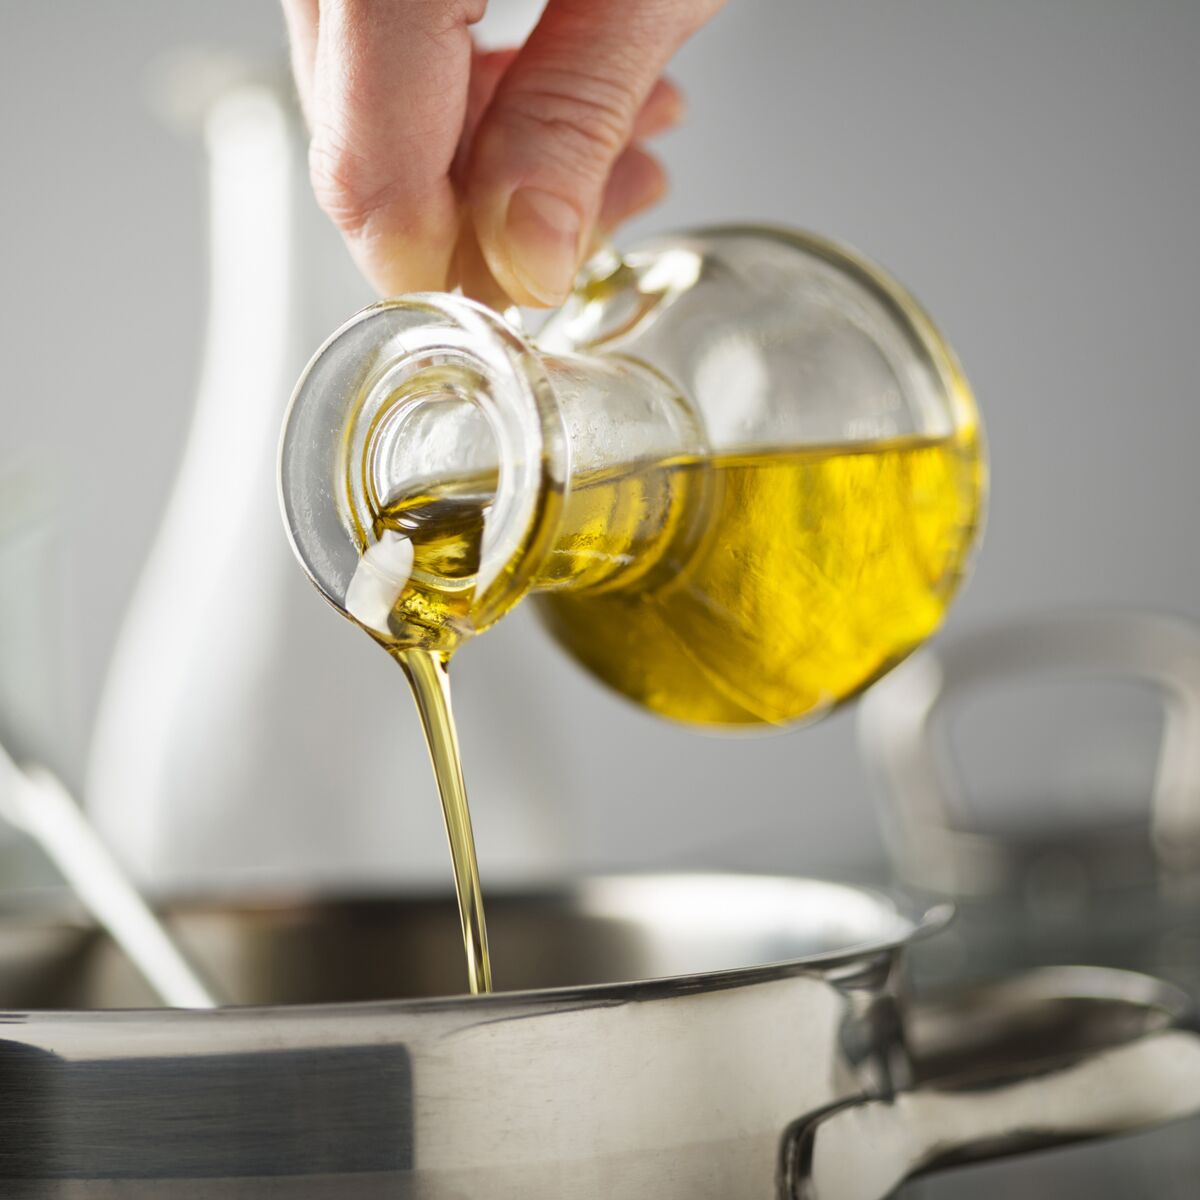 De l'huile d'olive extra vierge pour la friture ? Une bonne idée